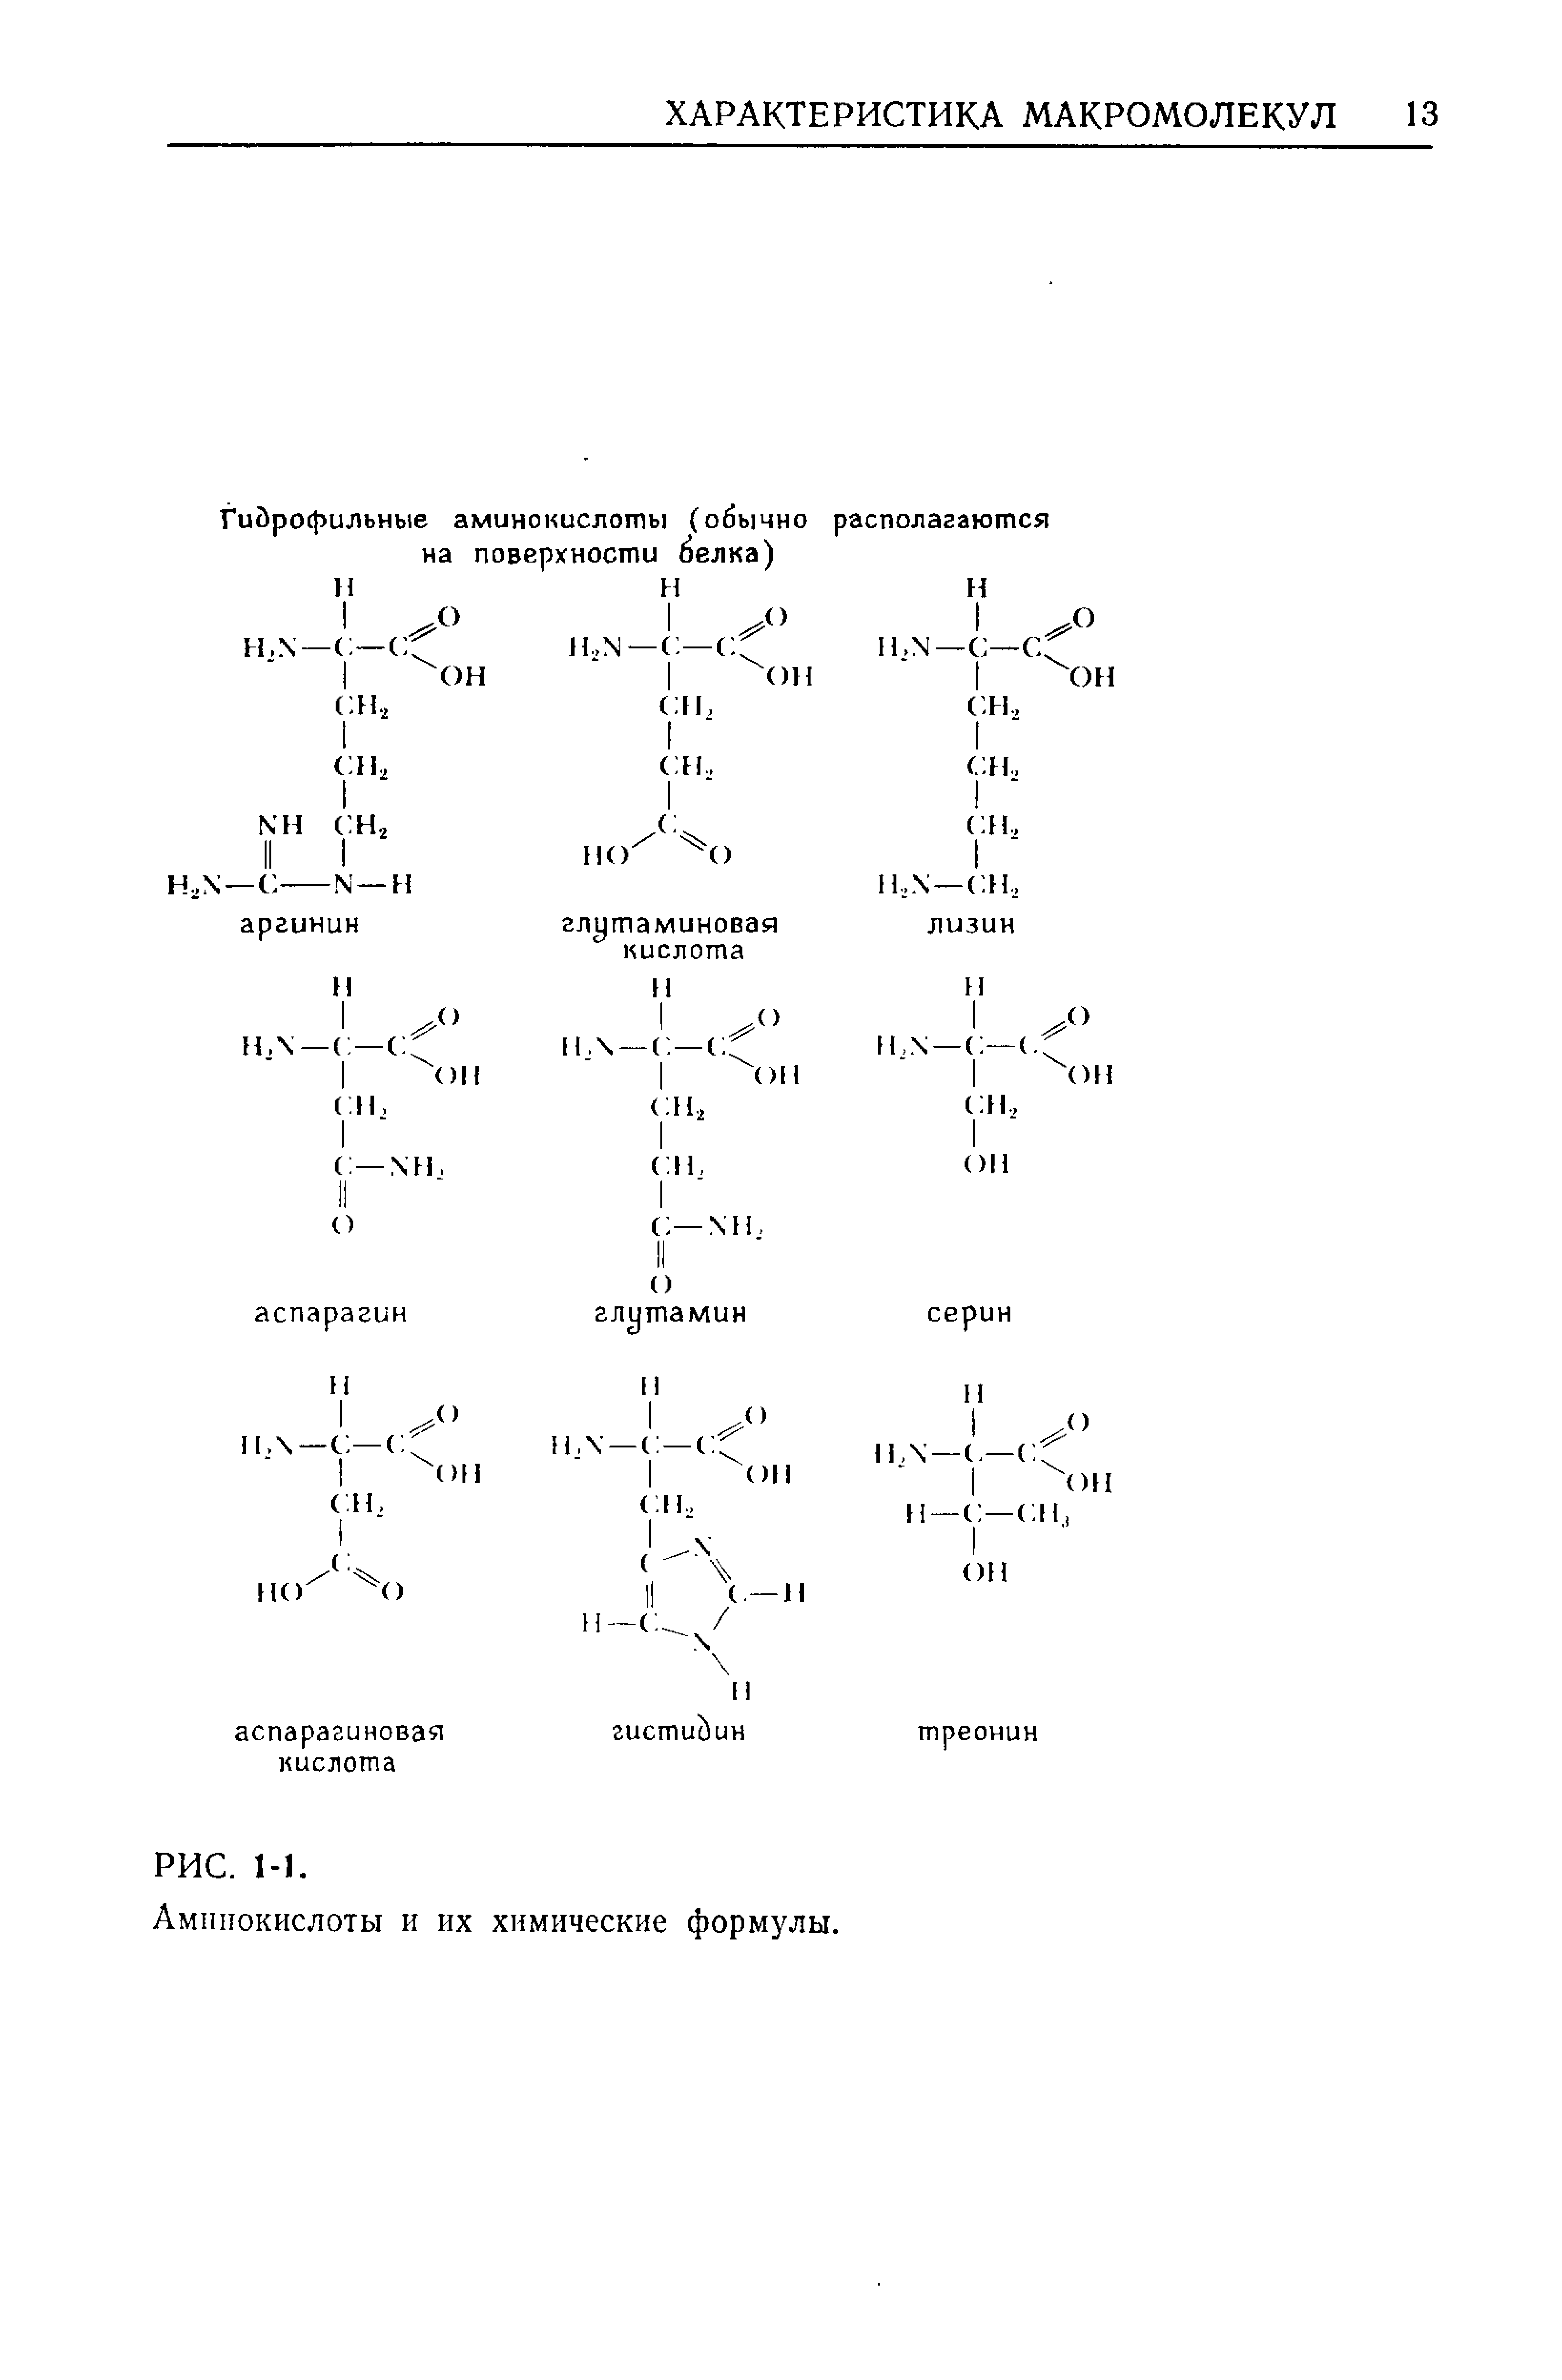 Аминокислоты и их химические формулы.